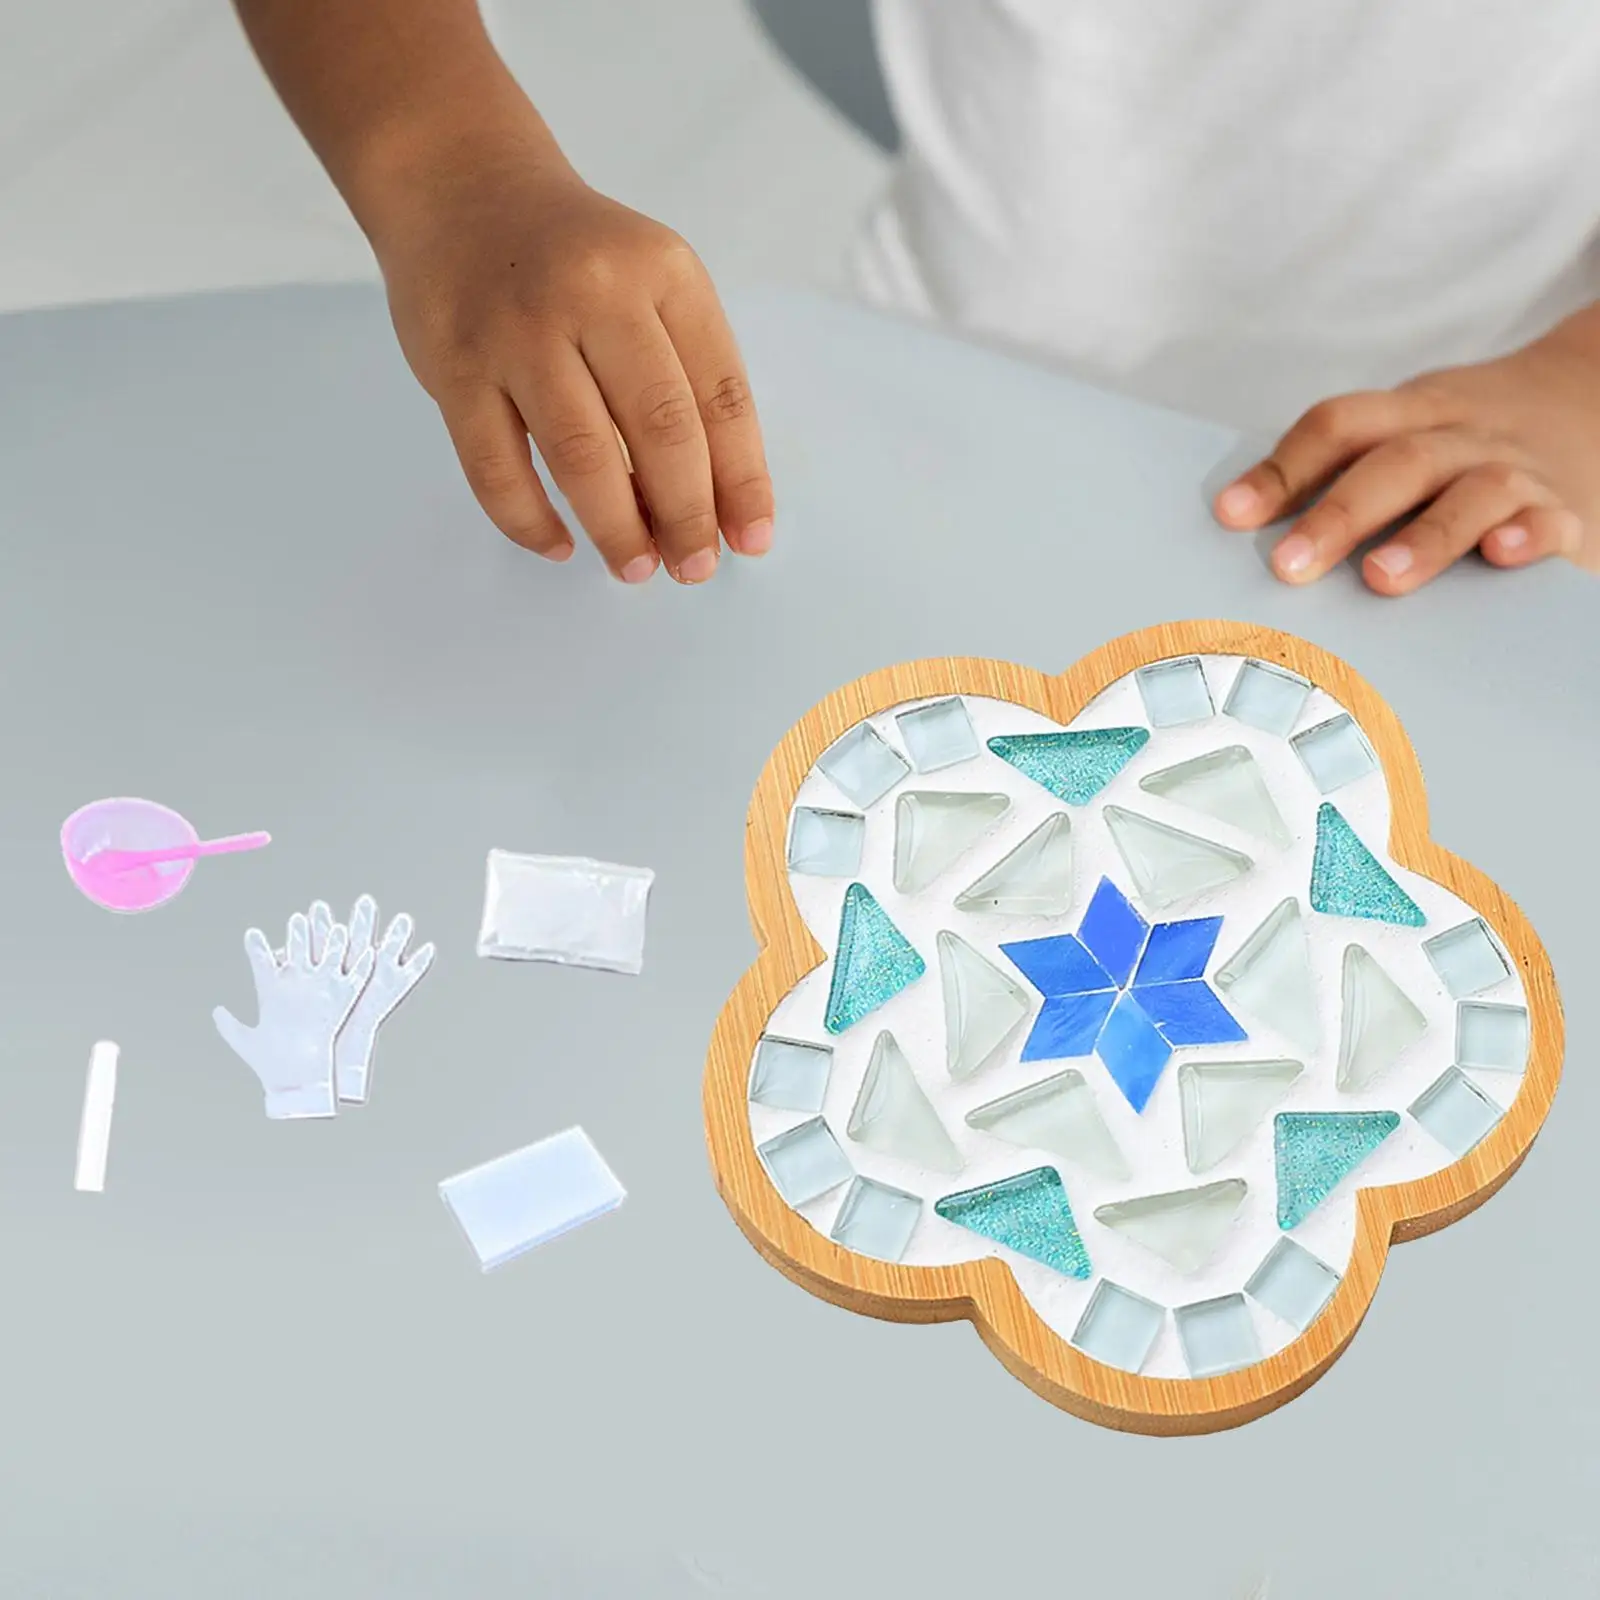 Mosaic Coaster Making Kits Home Decoration Mosaic Craft Materials Placemat